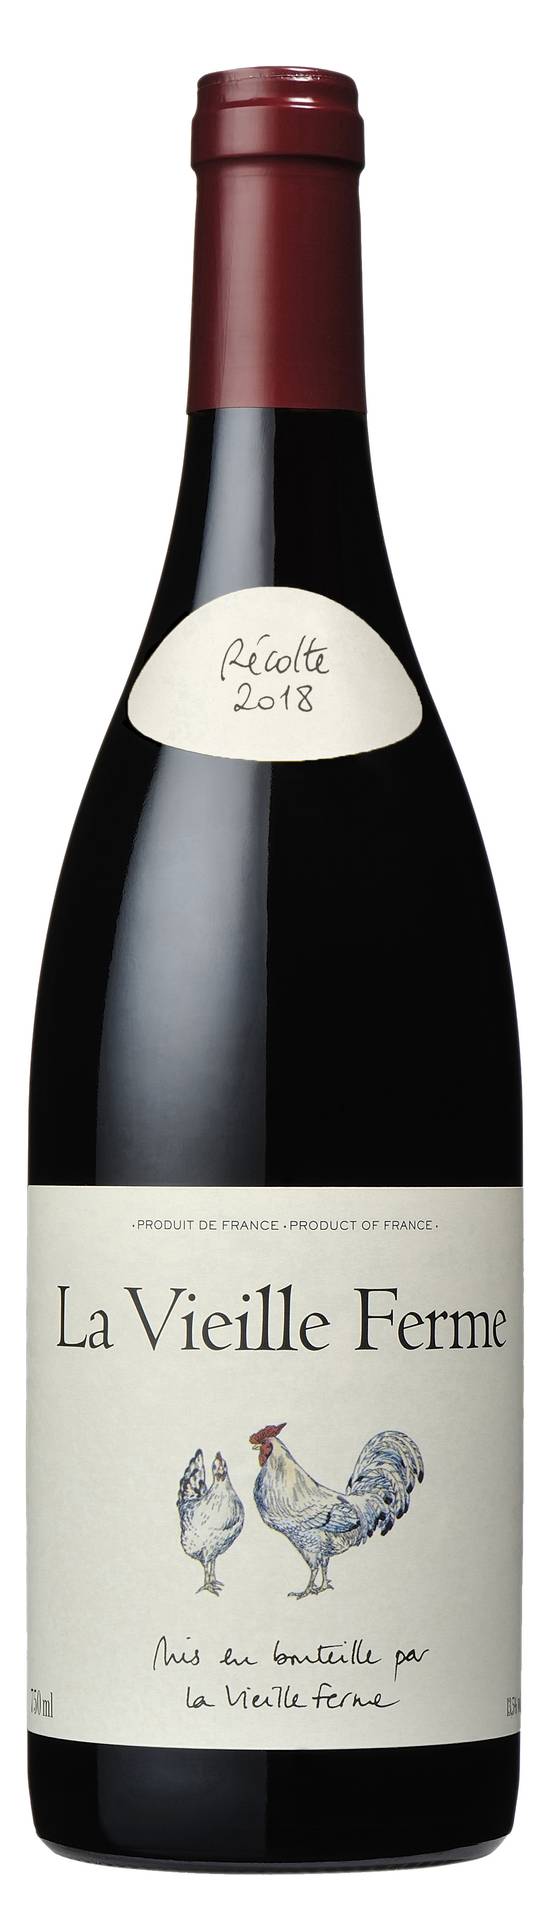 La Vieille Ferme - Ventoux vin rouge 2018 (1.87 L)